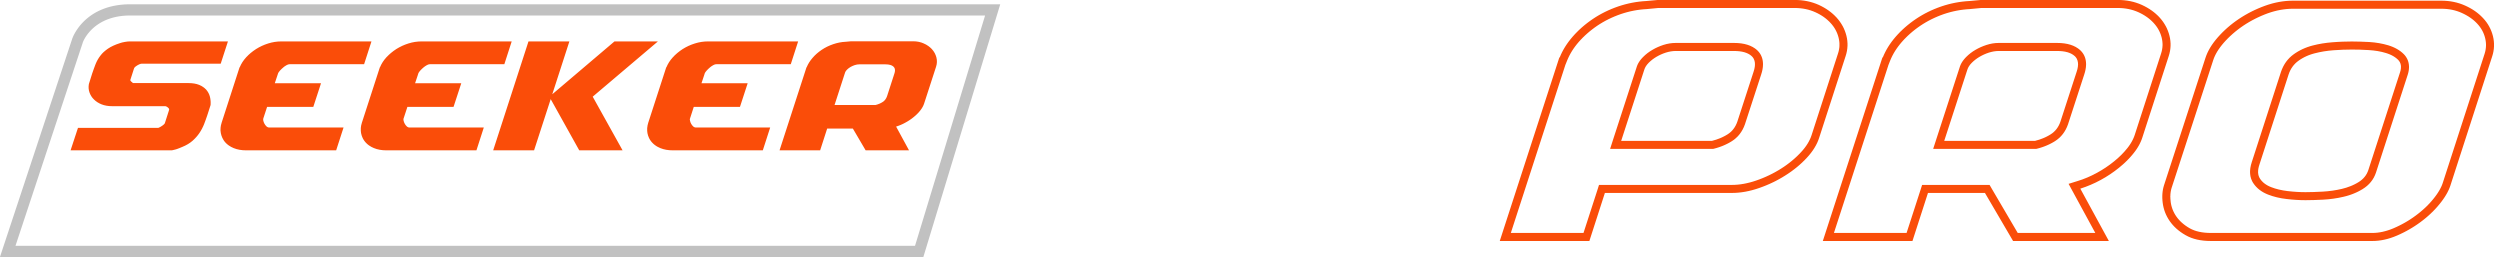 Seeker 60 Pro Logo